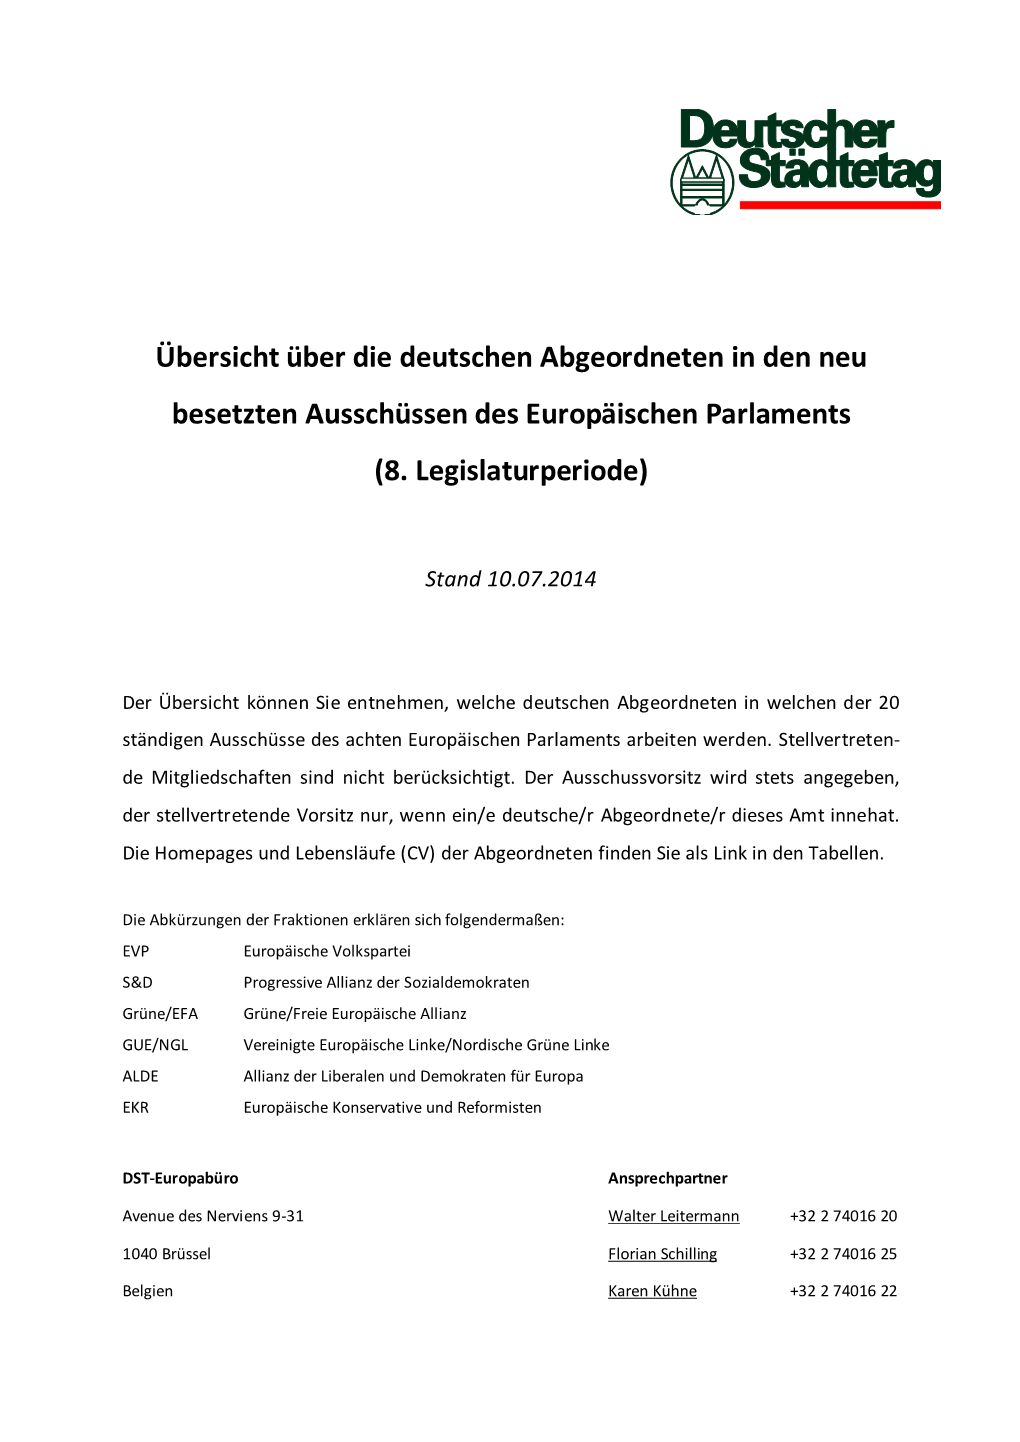 Übersicht Über Die Deutschen Abgeordneten in Den Neu Besetzten Ausschüssen Des Europäischen Parlaments (8